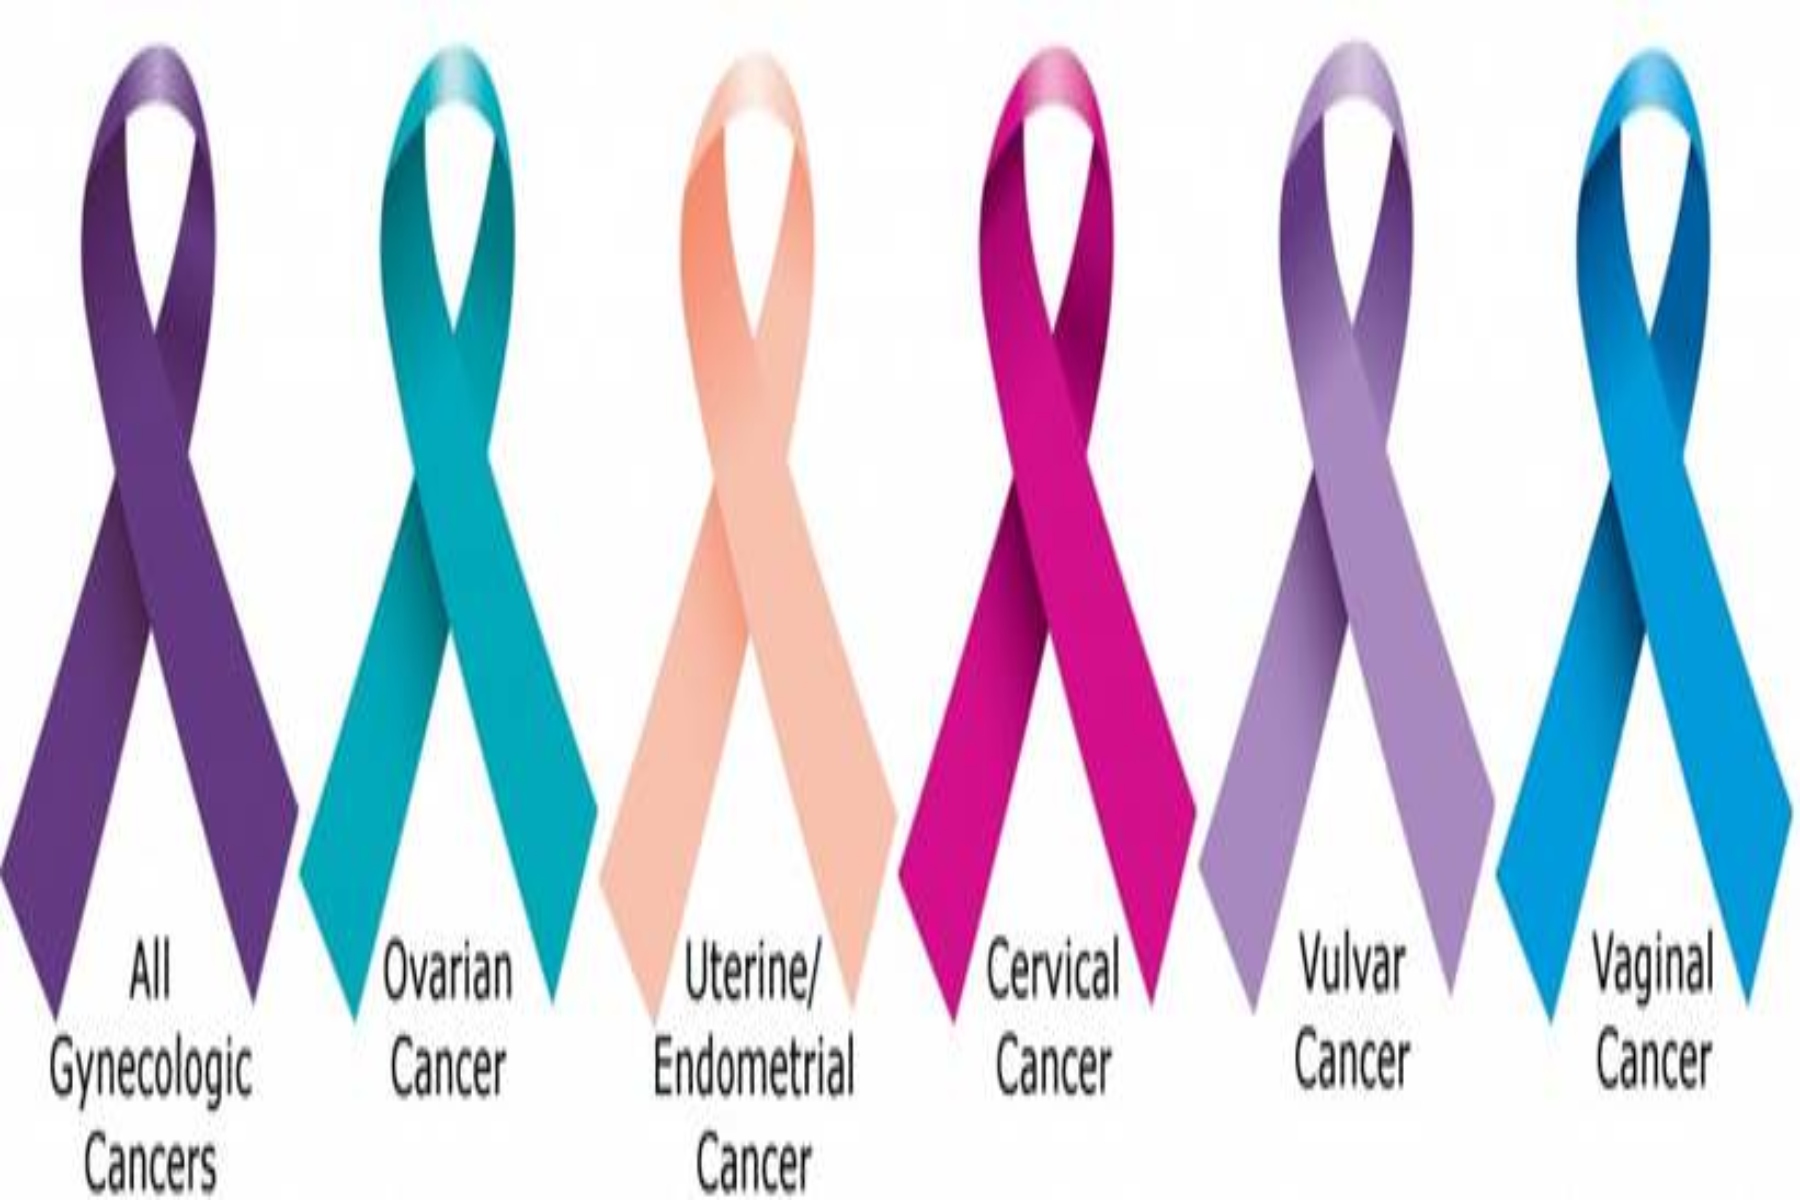 Η ευαισθητοποίηση είναι το κλειδί για την προστασία των γυναικών σε σχέση με τον καρκίνο